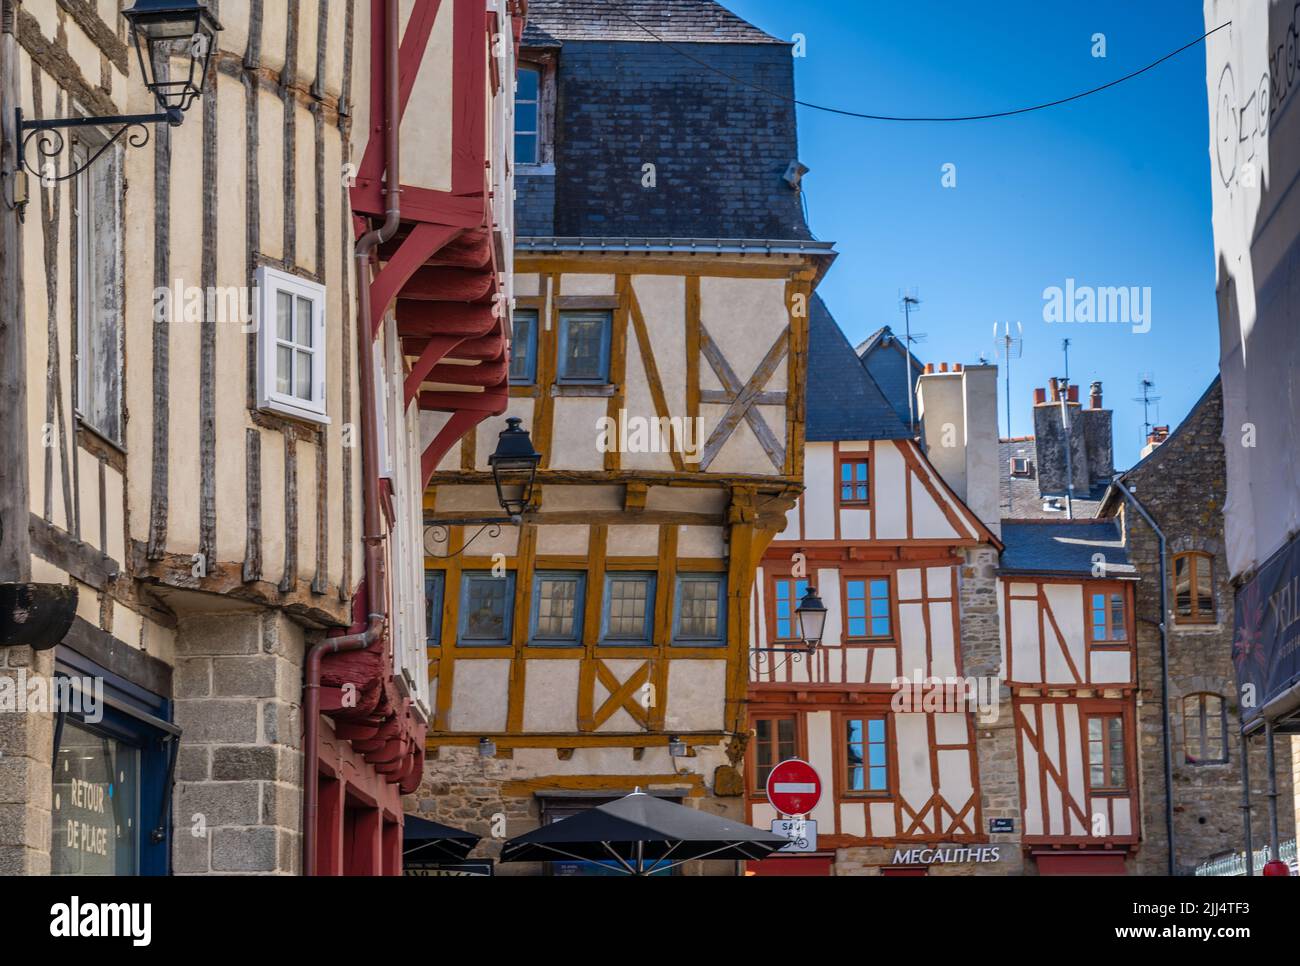 Maisons typiques à colombages de la ville de vannes, Bretagne Banque D'Images